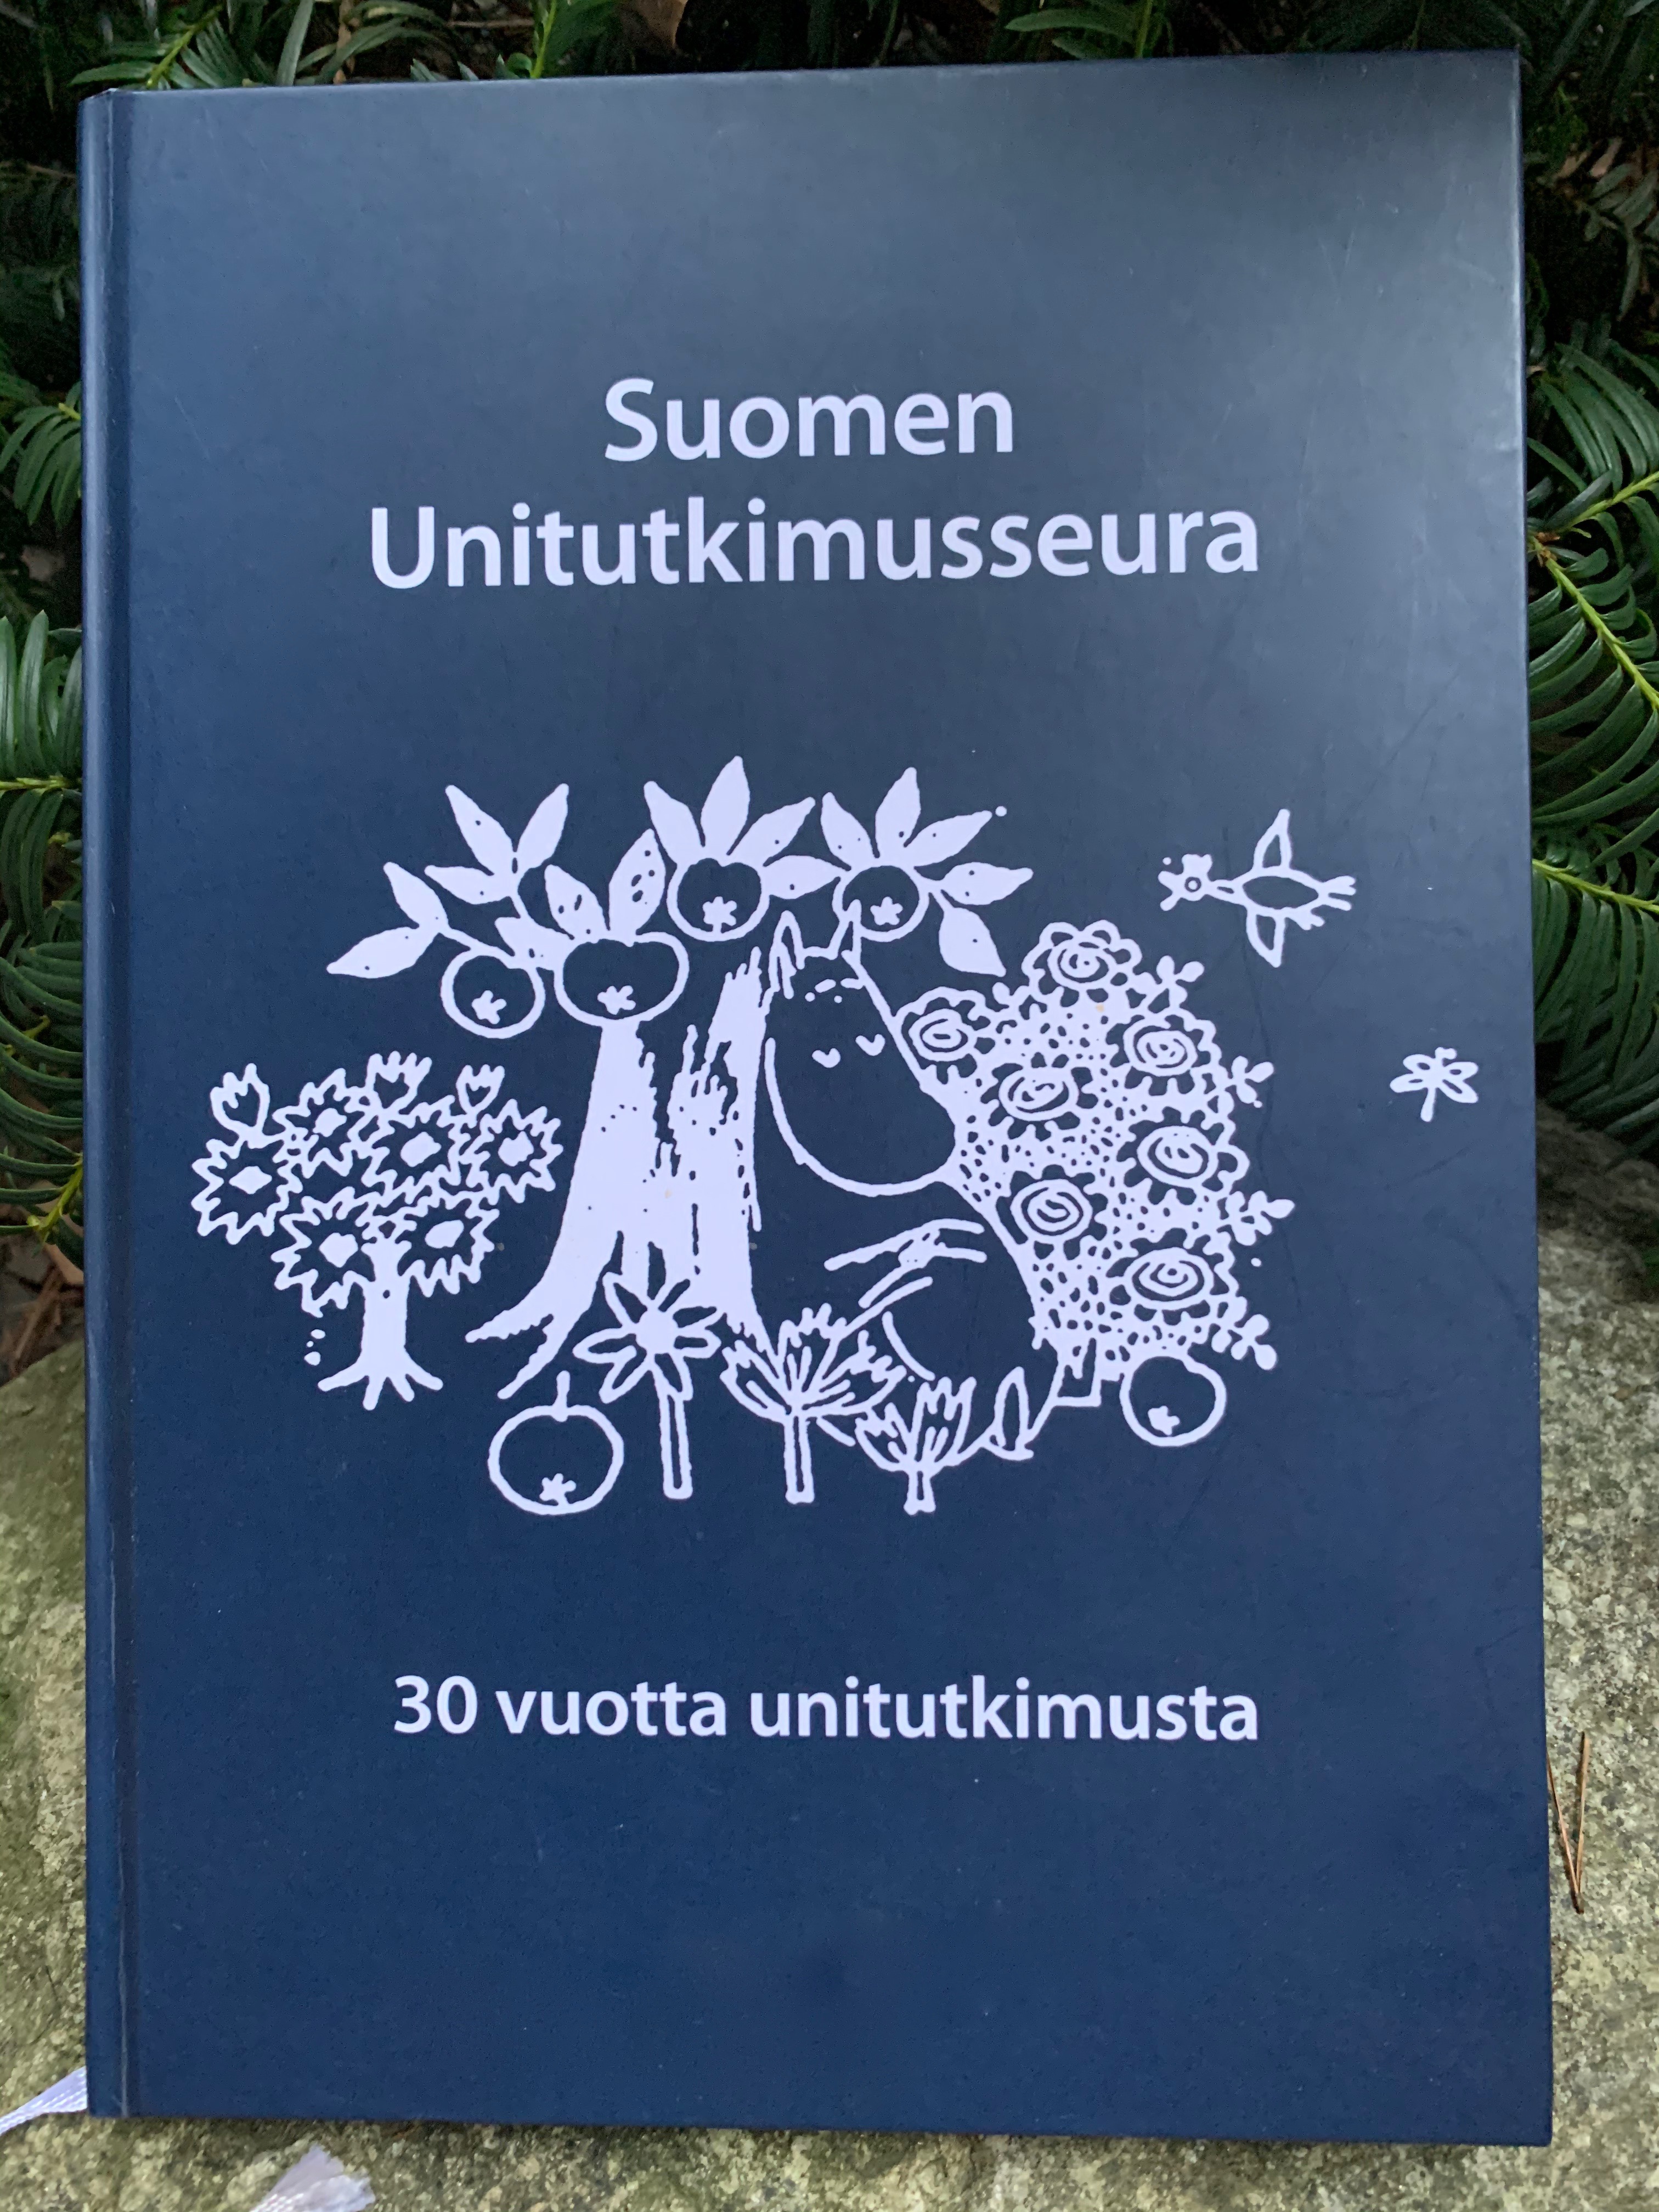 Historiken med titeln "Suomen Unitutkimusseura - 30 vuotta unitutkimusta".